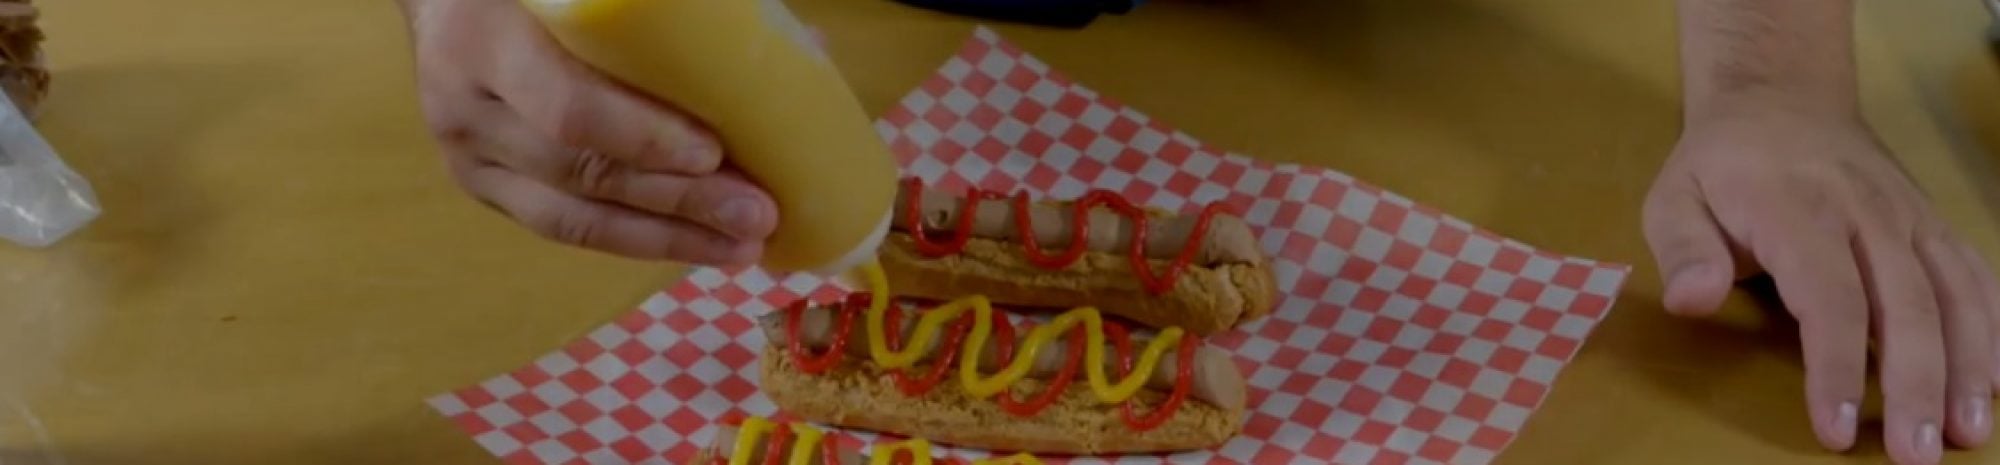 Hot Dogs sucrés par Saint Crème